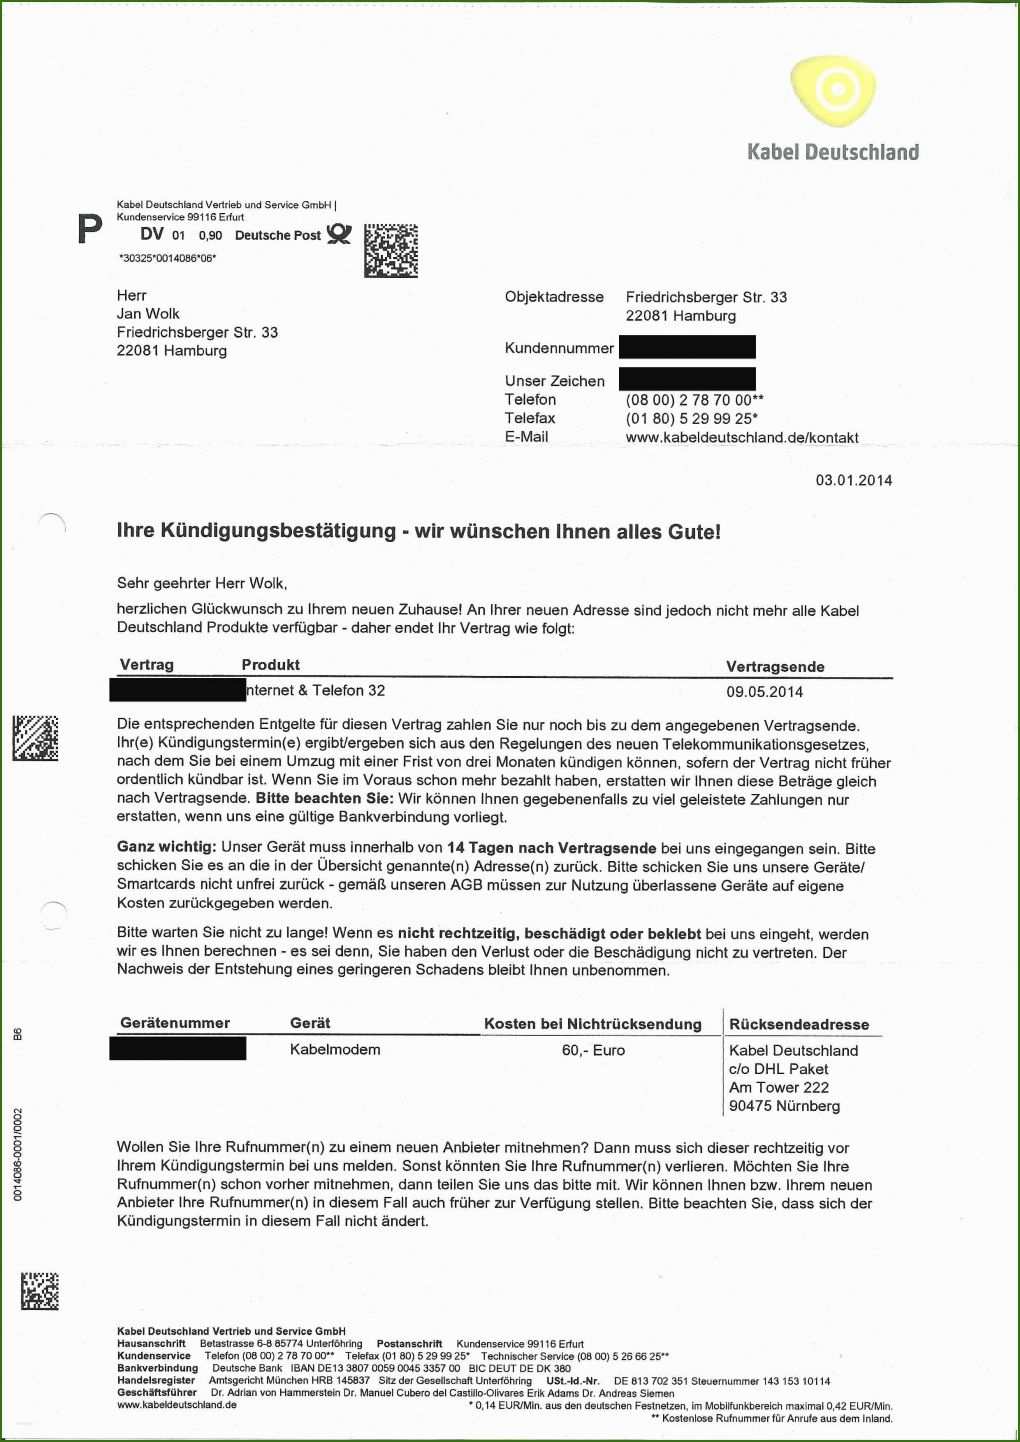 016 Kabel Deutschland Kündigung Umzug Vorlage Pdf Kabel Deutschland Kündigung Vorlage Umzug Quirky Kabel